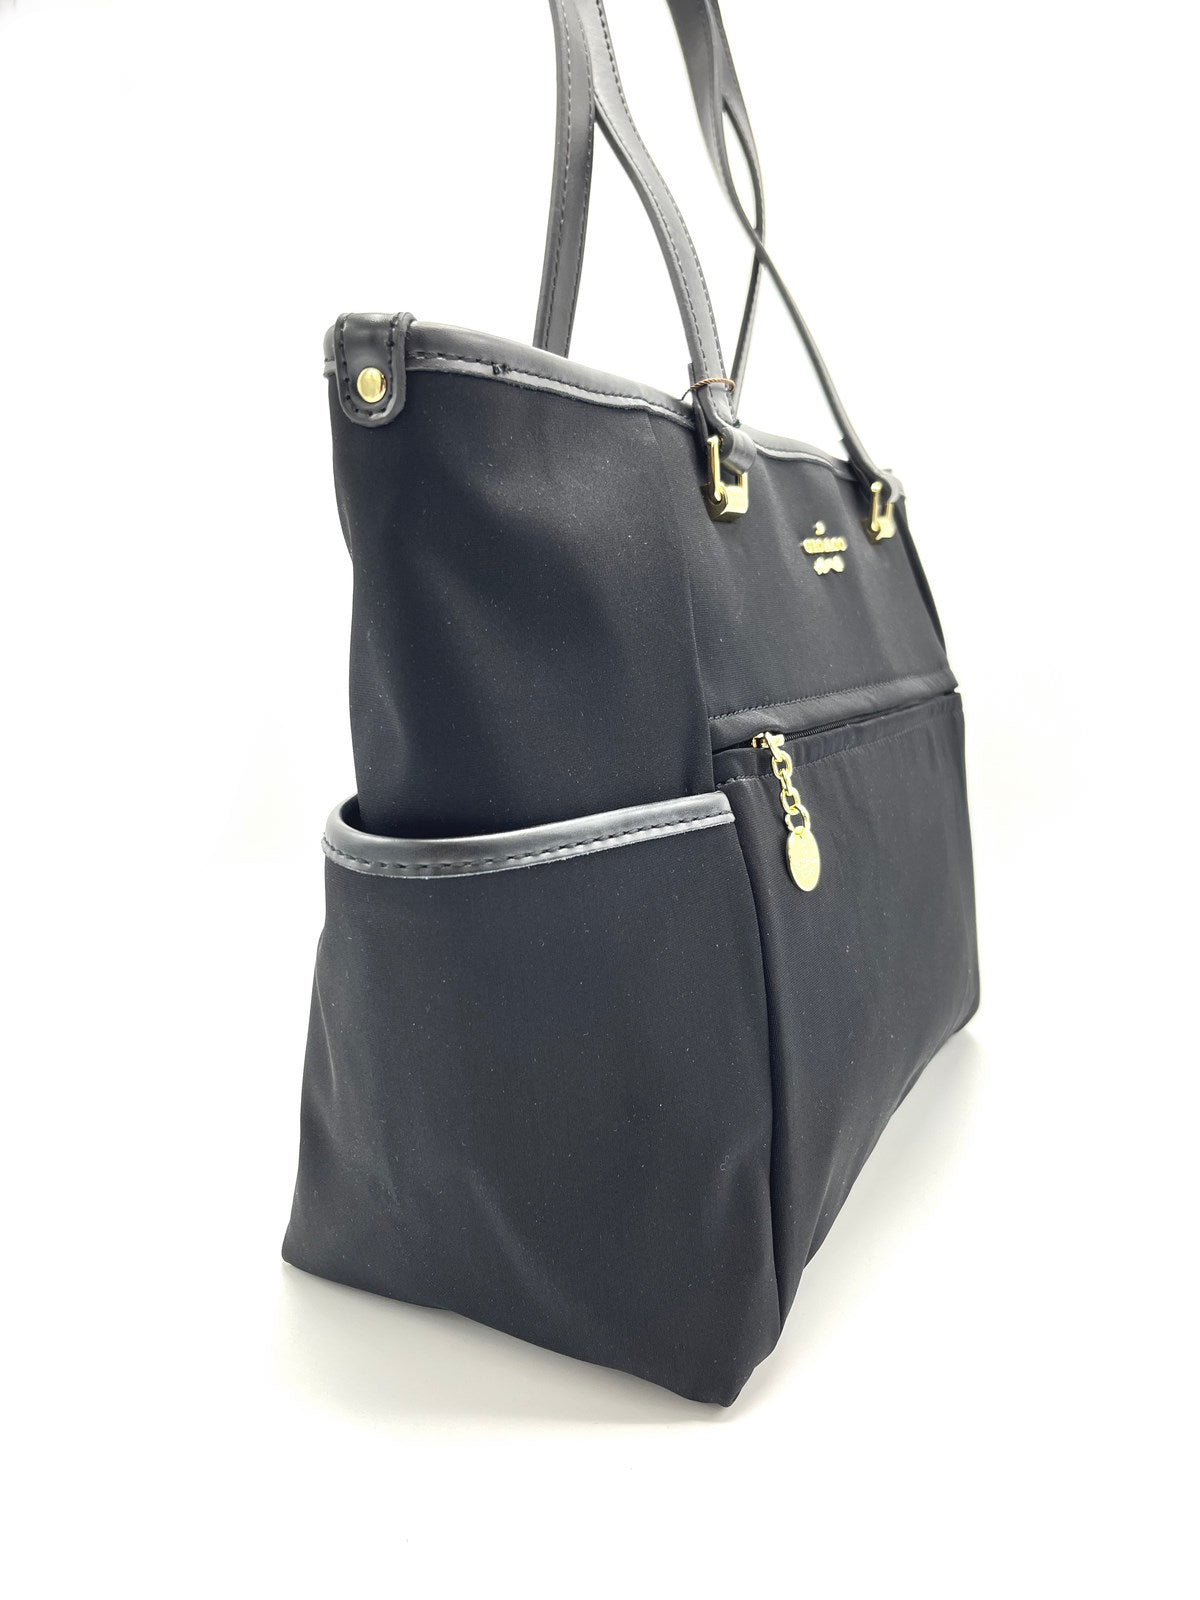 Brand GIO&amp;CO, Nylon handbag, for women, art. N26.475